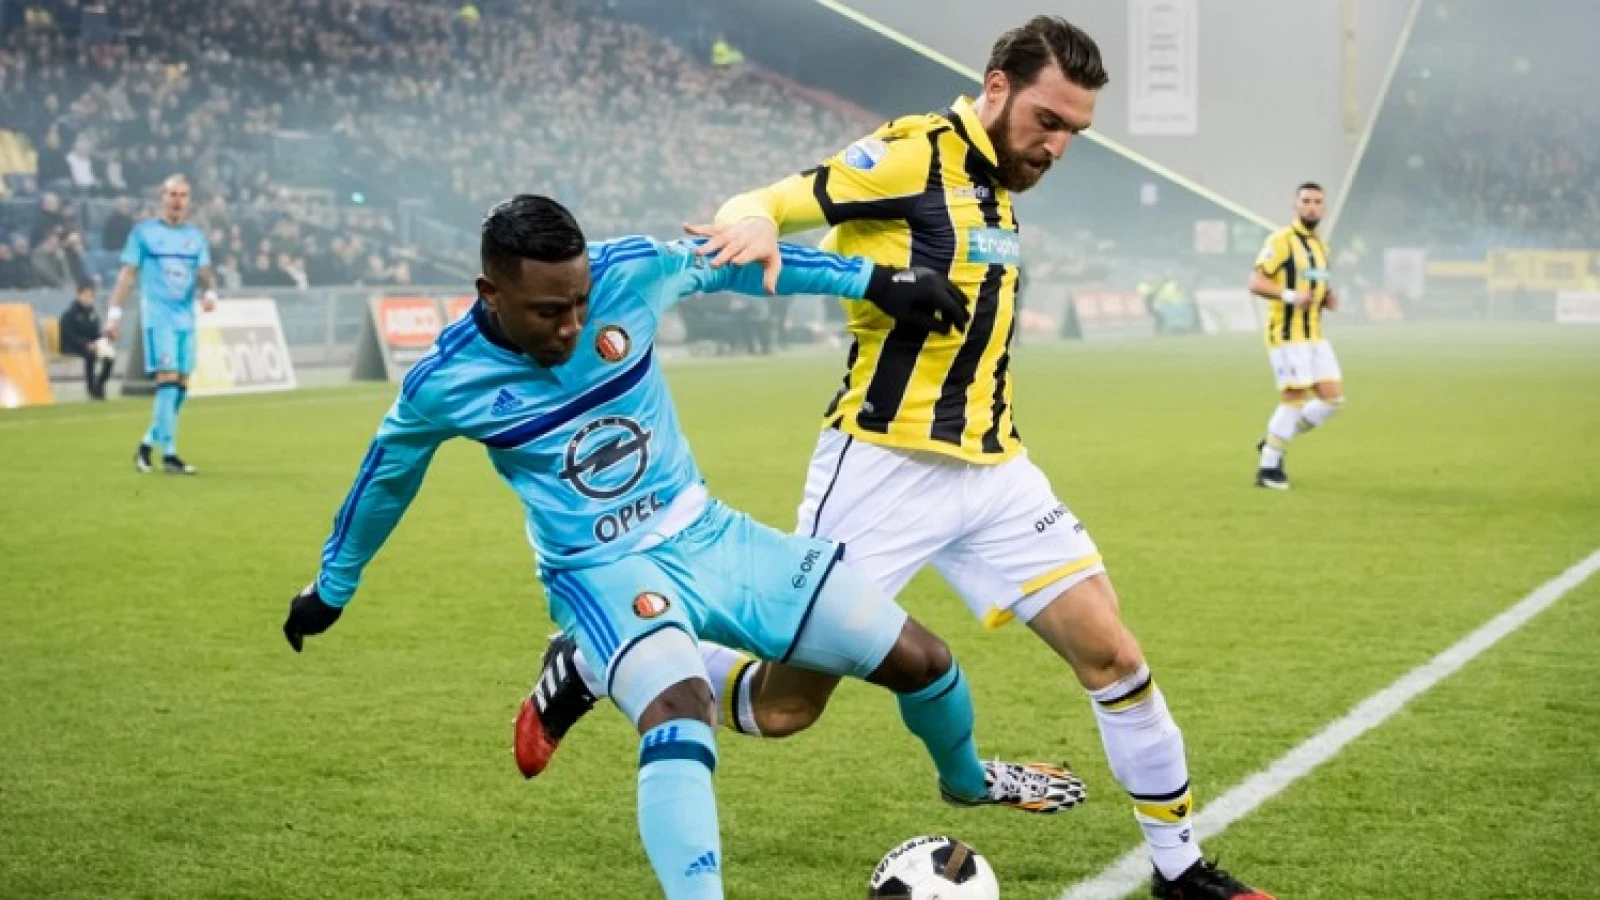 Opmerkelijke uitspraak Vitesse-speler: 'Het is geen goede zaak, maar ik houd ervan'